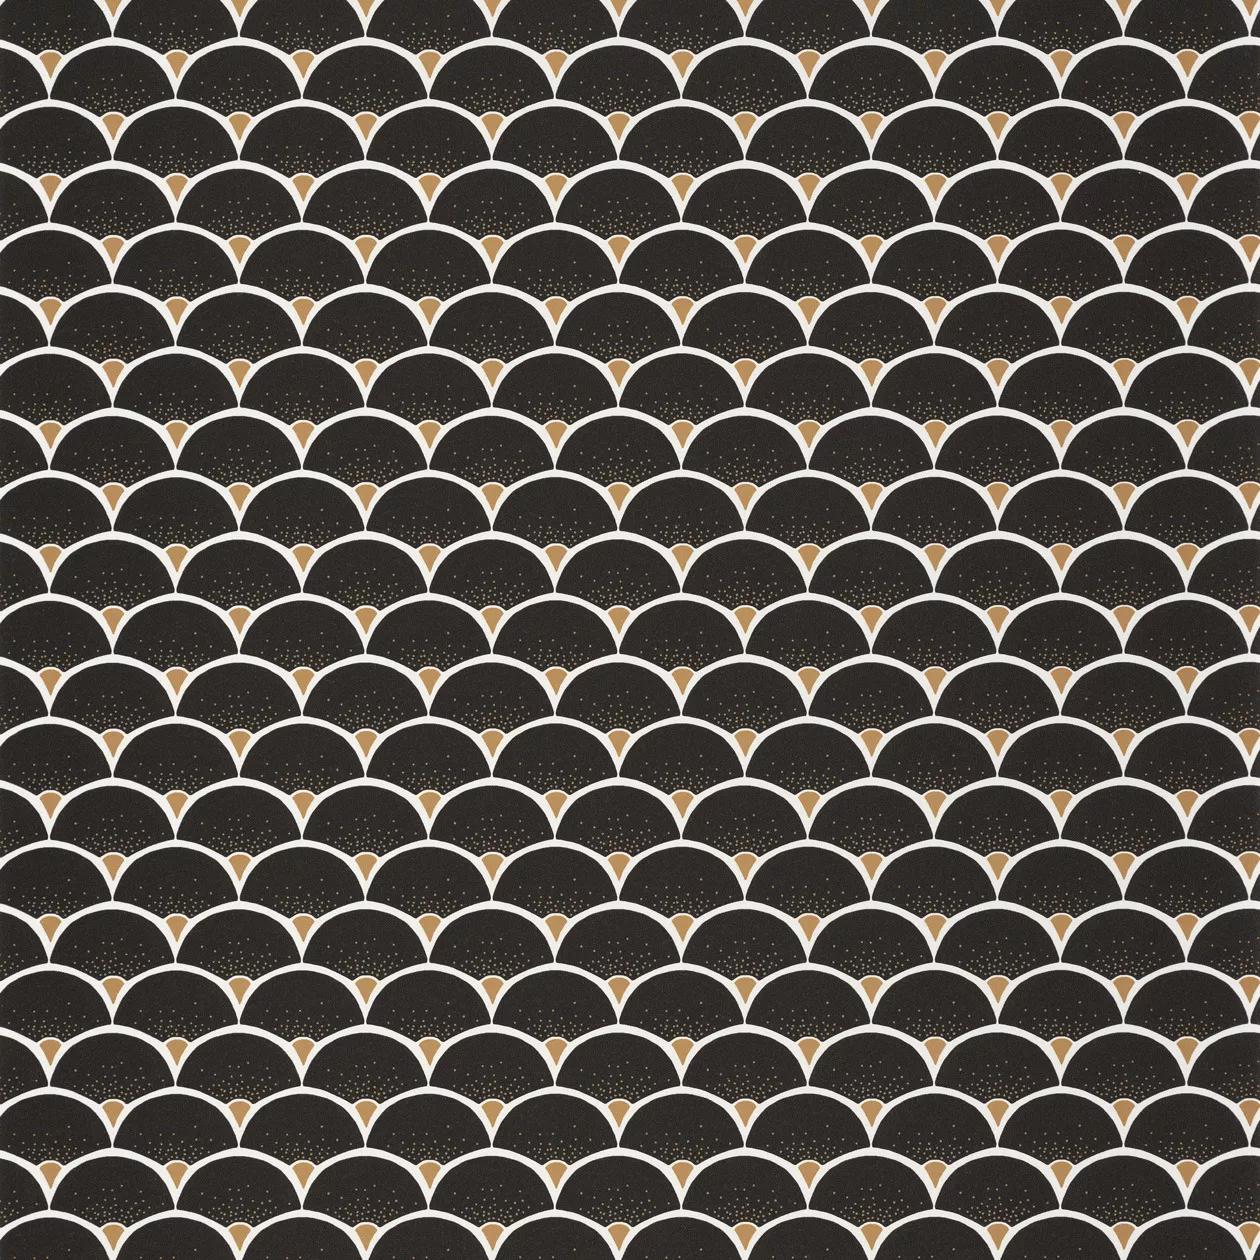 Fekete fehér tapéta csempe mintával modern stílusban